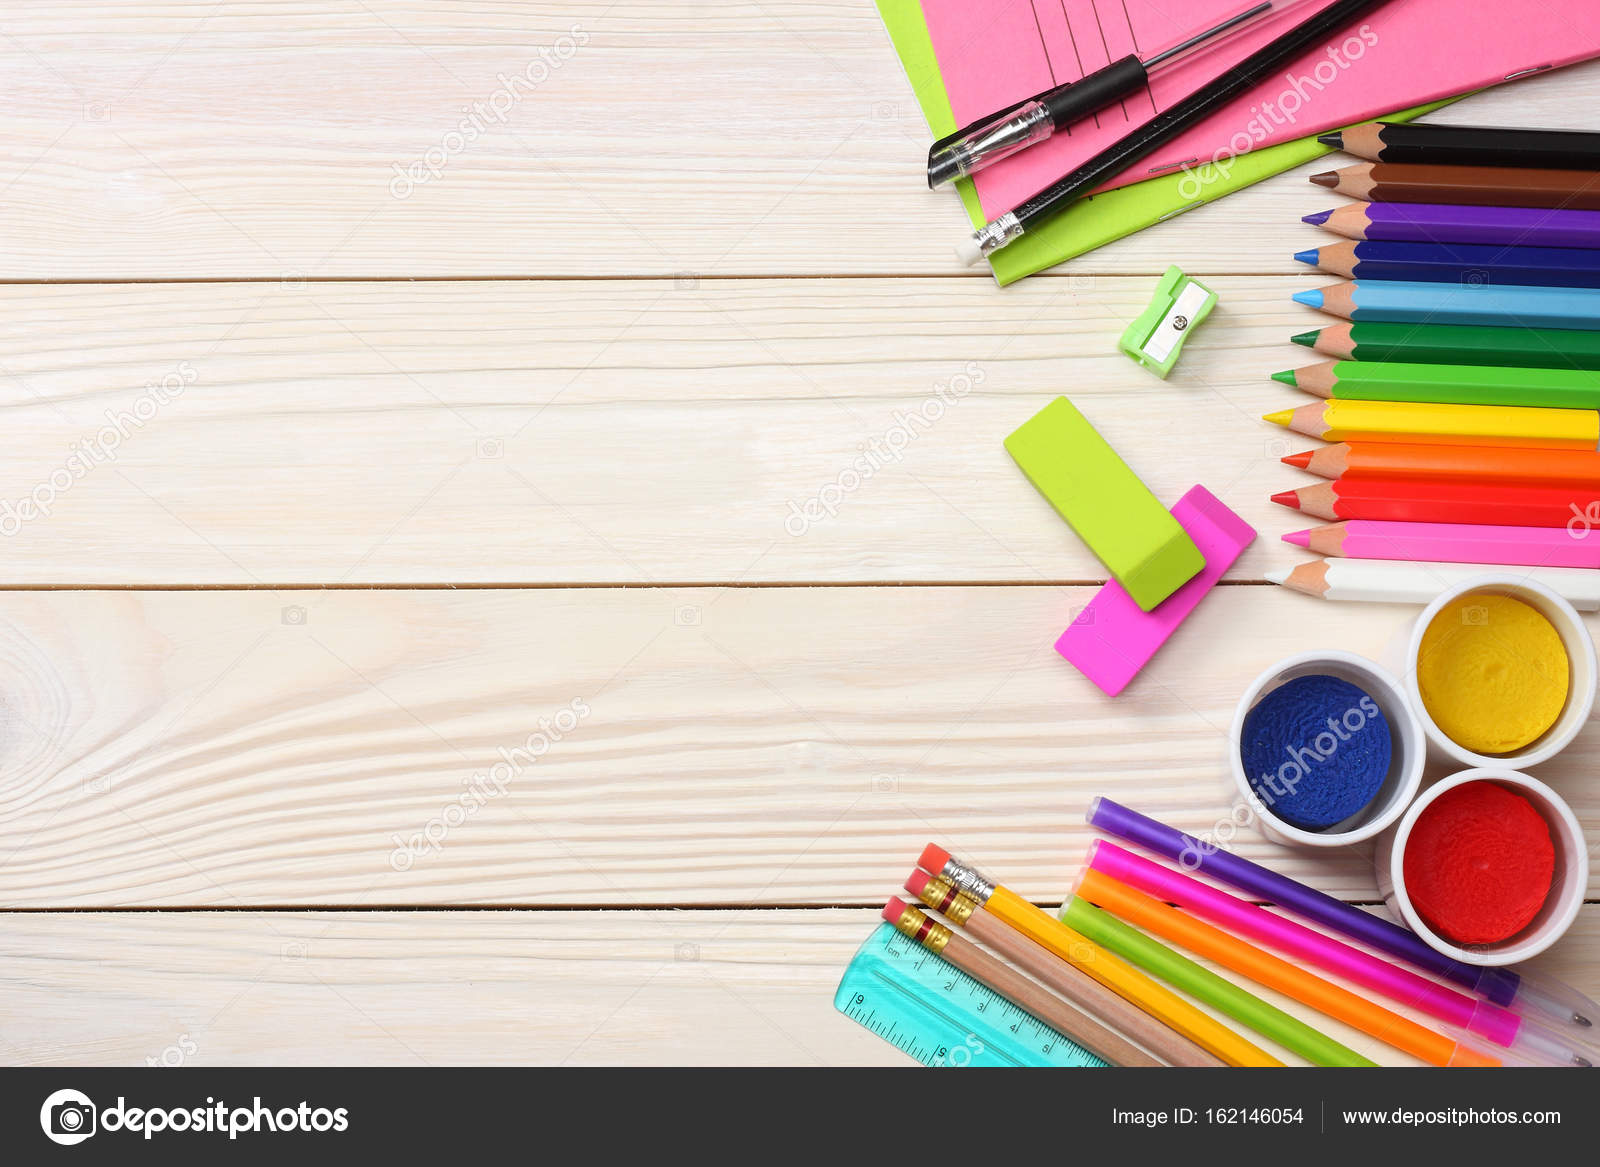 Skole- og kontorartikler. skolebaggrund. farvede blyanter, pen, papir til skole og studerende uddannelse på hvid træ baggrund. topvisning — Stock-foto © muslimova_tv@mail.ru